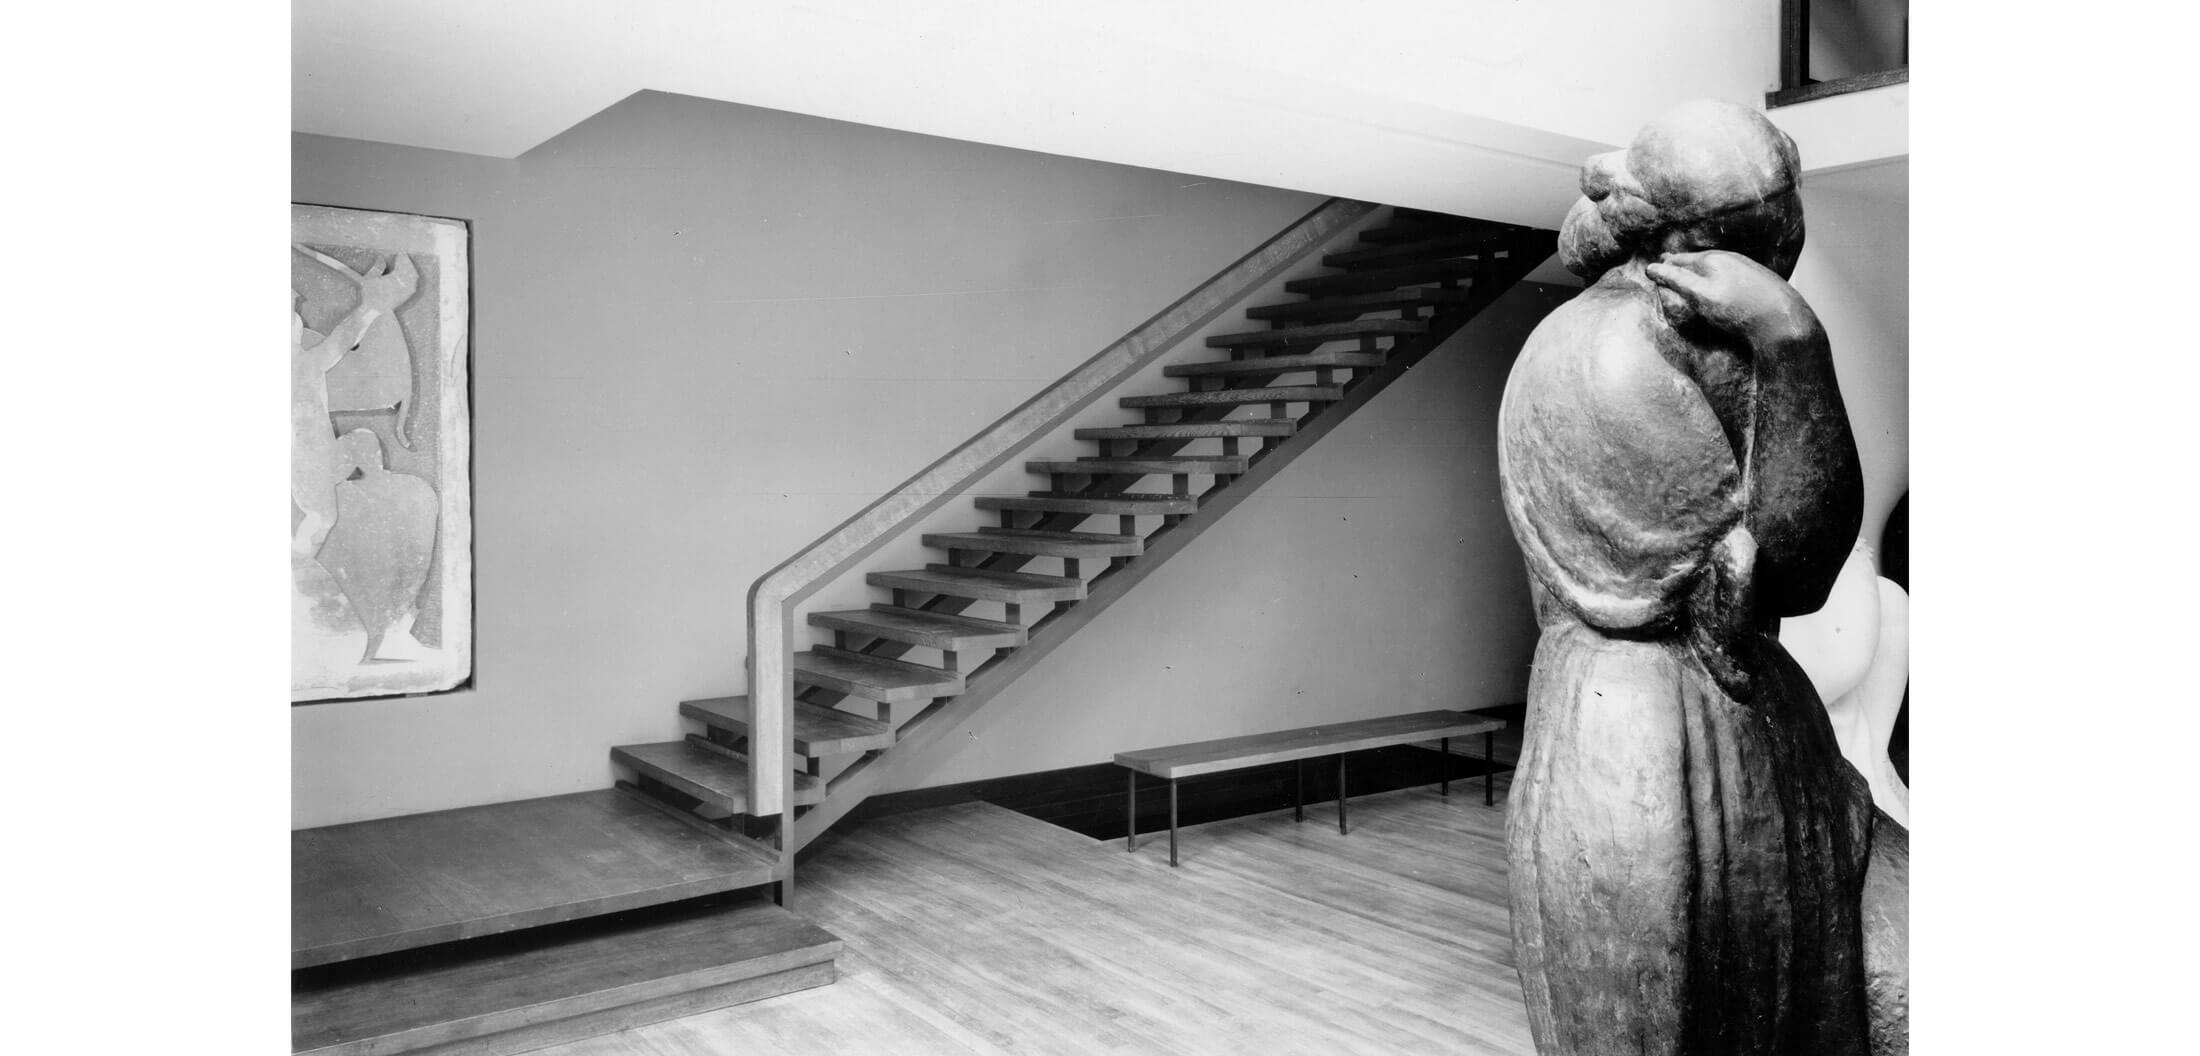 Realizirani interijer atelijera Ivana Meštrovića u Zagrebu; pogled na stepenice prema galeriji, 1963. (foto: Vilko Zuber)